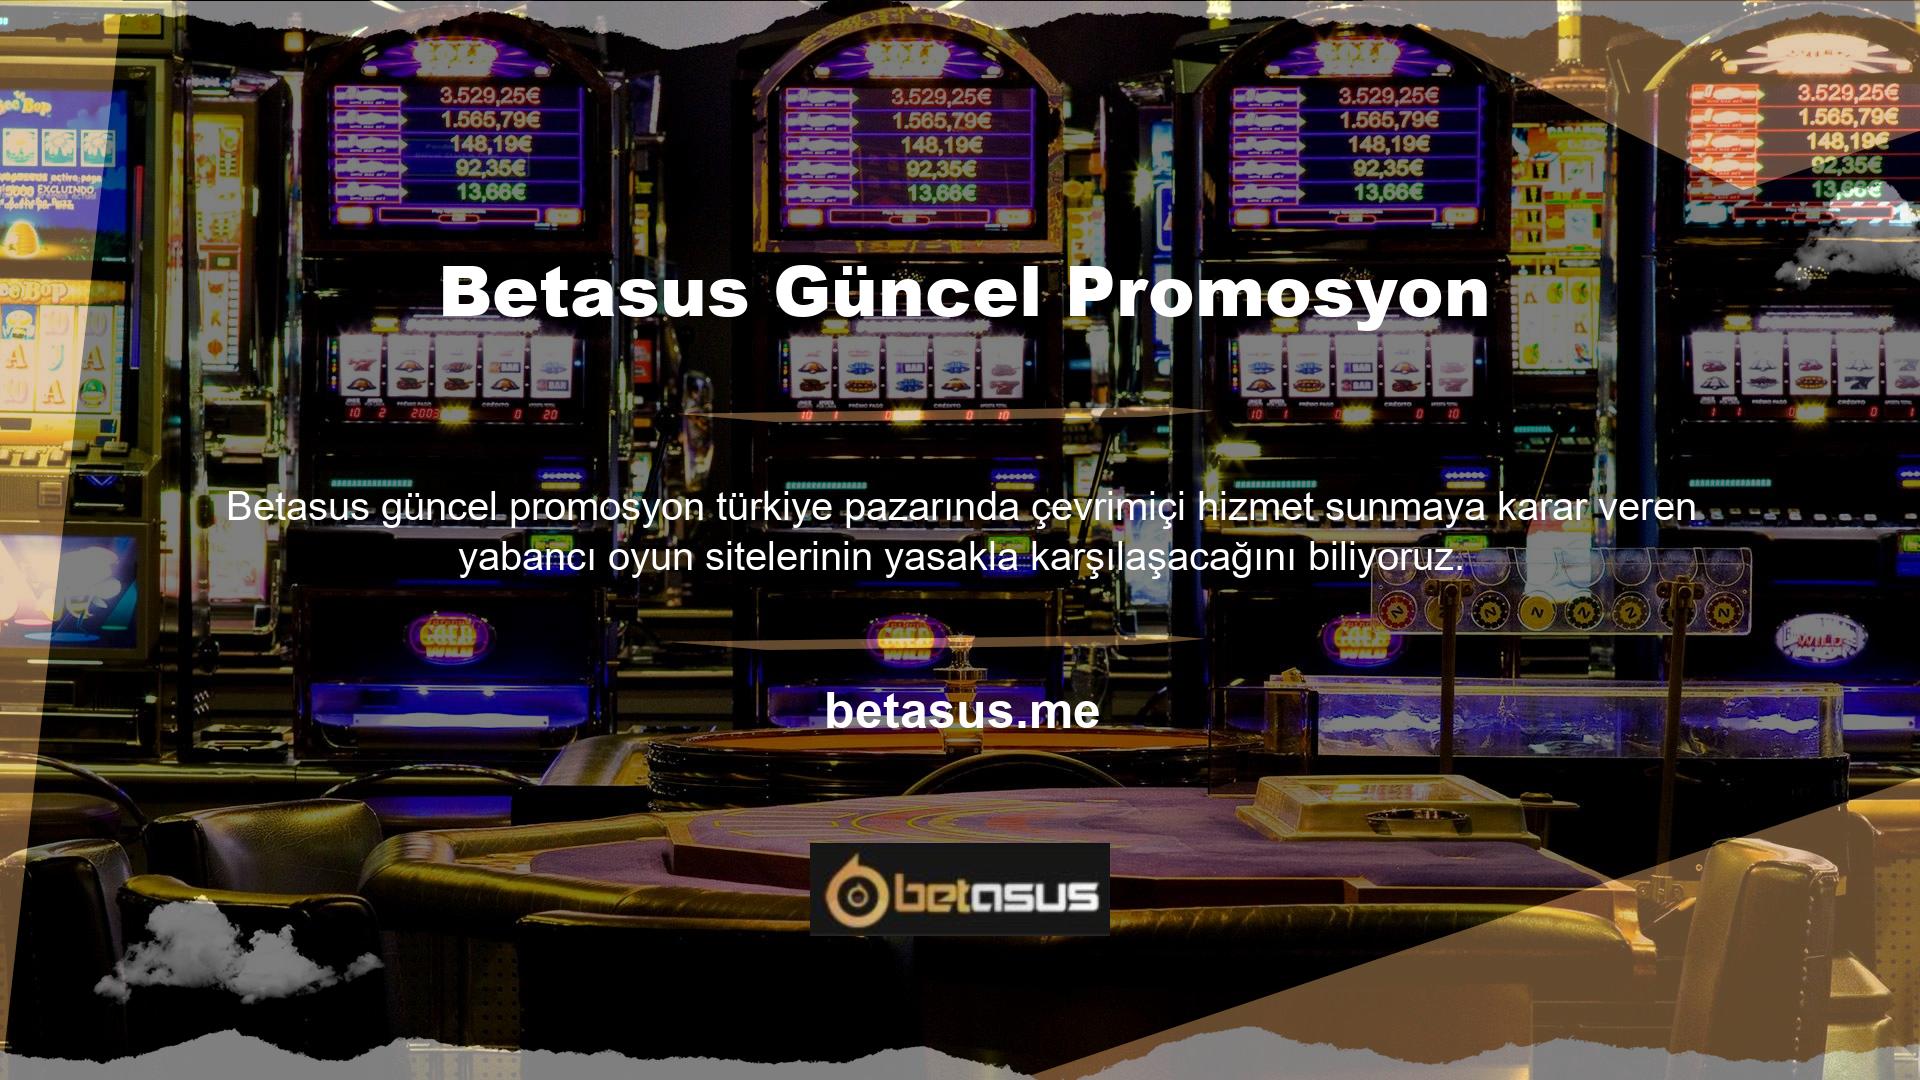 Betasus casino sitesi de hizmet sunan Türk yasa dışı casino sitelerinden biridir